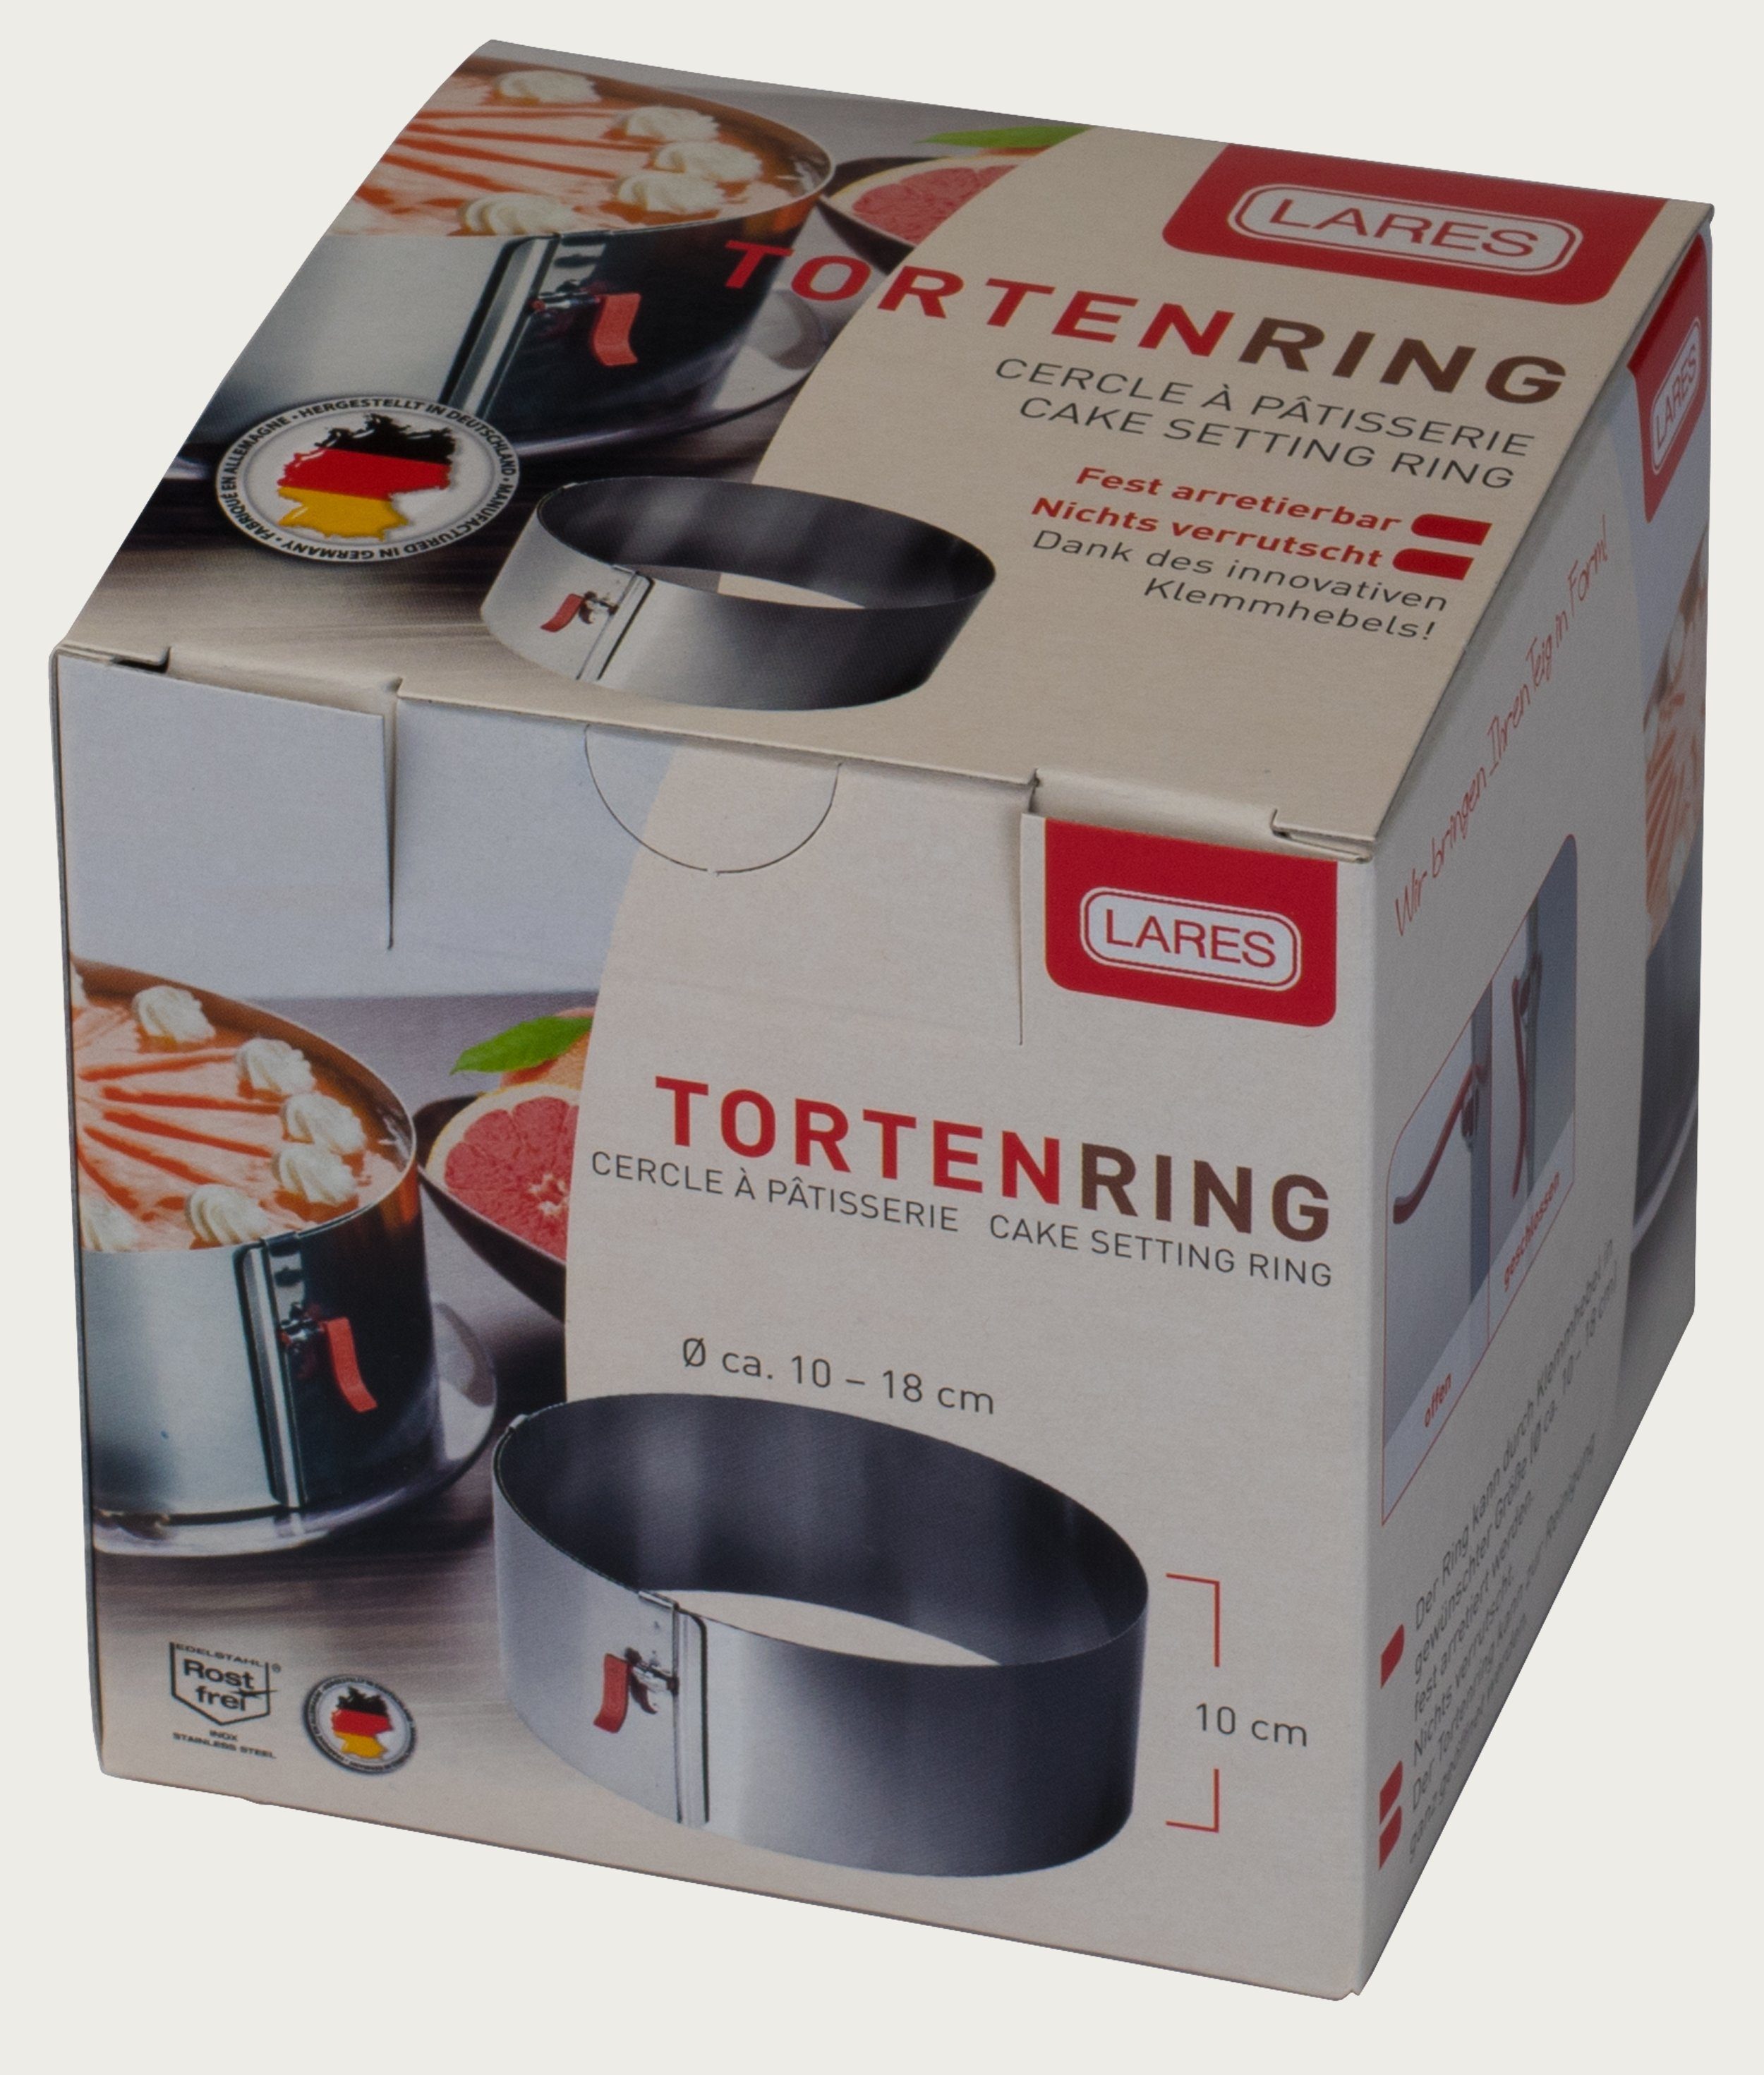 LARES Tortenring 6016, rostfreiem Germany Klemmhebel, Made aus Edelstahl, Edelstahl, 10cm Höhe, mit in verstellbar